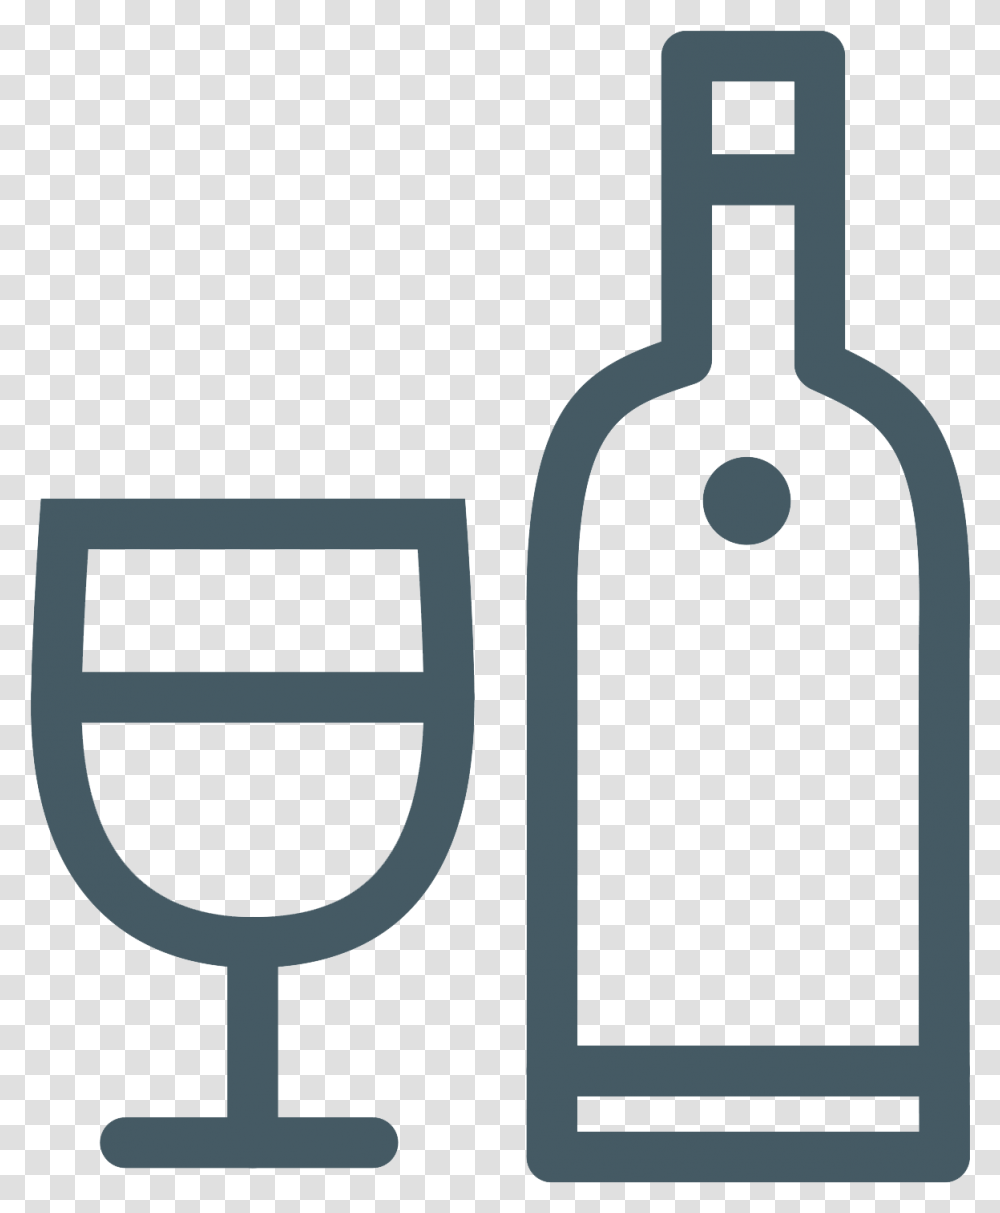 Party Logo For Instagram Highlights, Beverage, Alcohol, Wine, Bottle Transparent Png